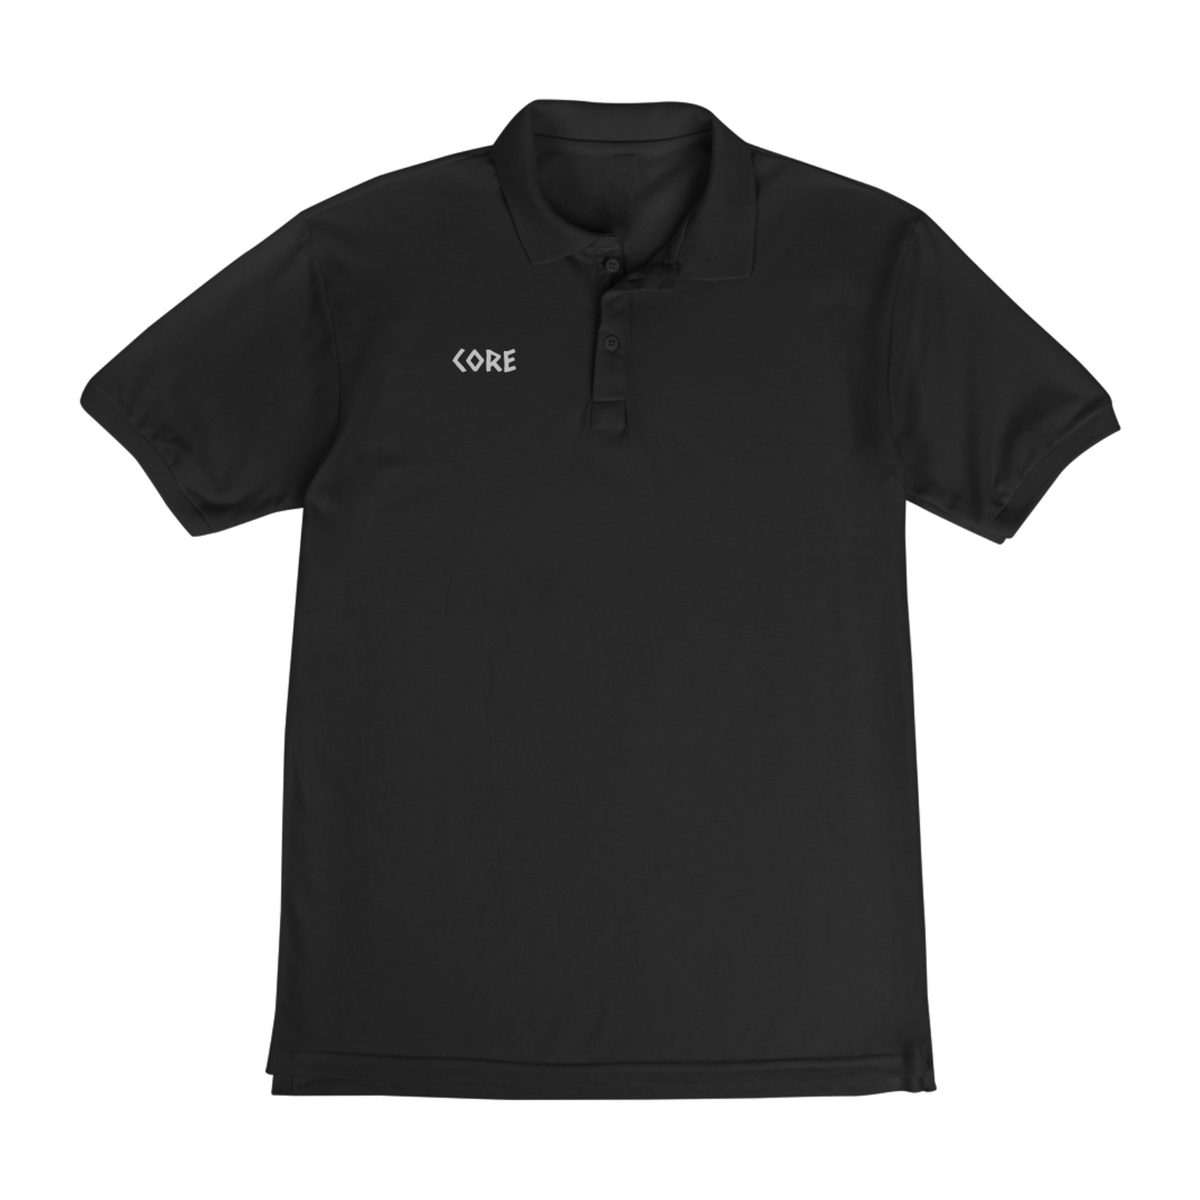 Nome do produto: Season CORE - Outfit Camisa Polo 